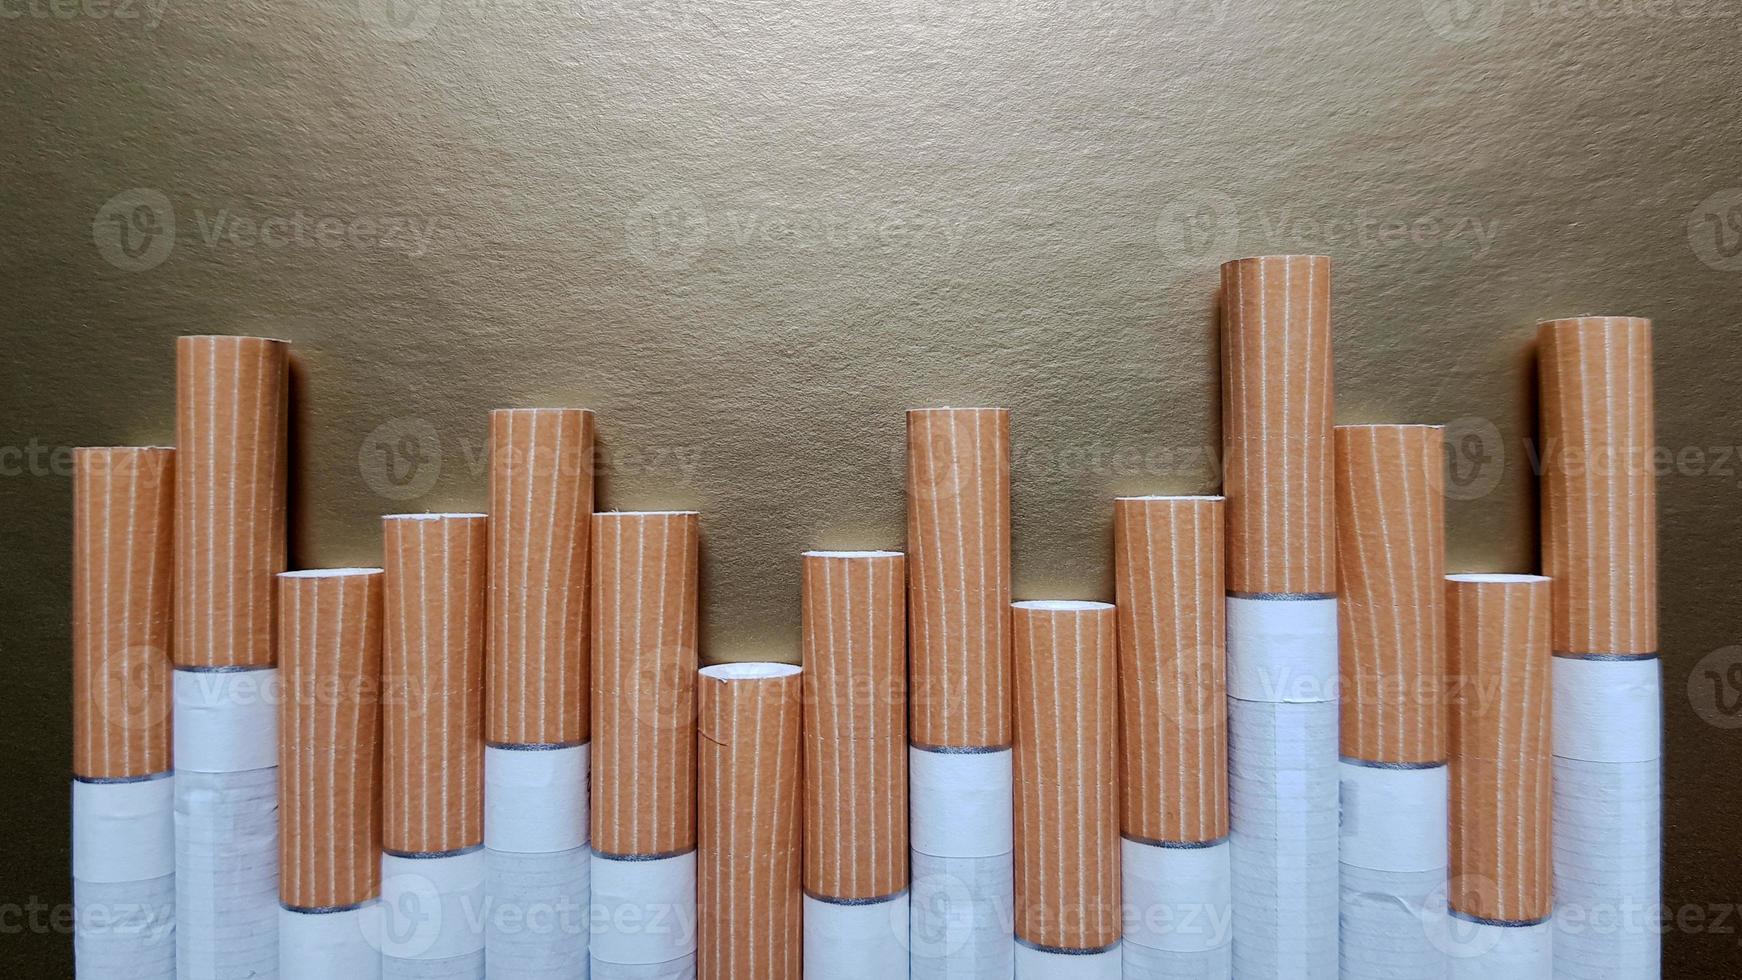 imagem de vários cigarros comerciais. pilha de cigarros em um fundo dourado ou conceito de campanha antifumo, tabaco foto